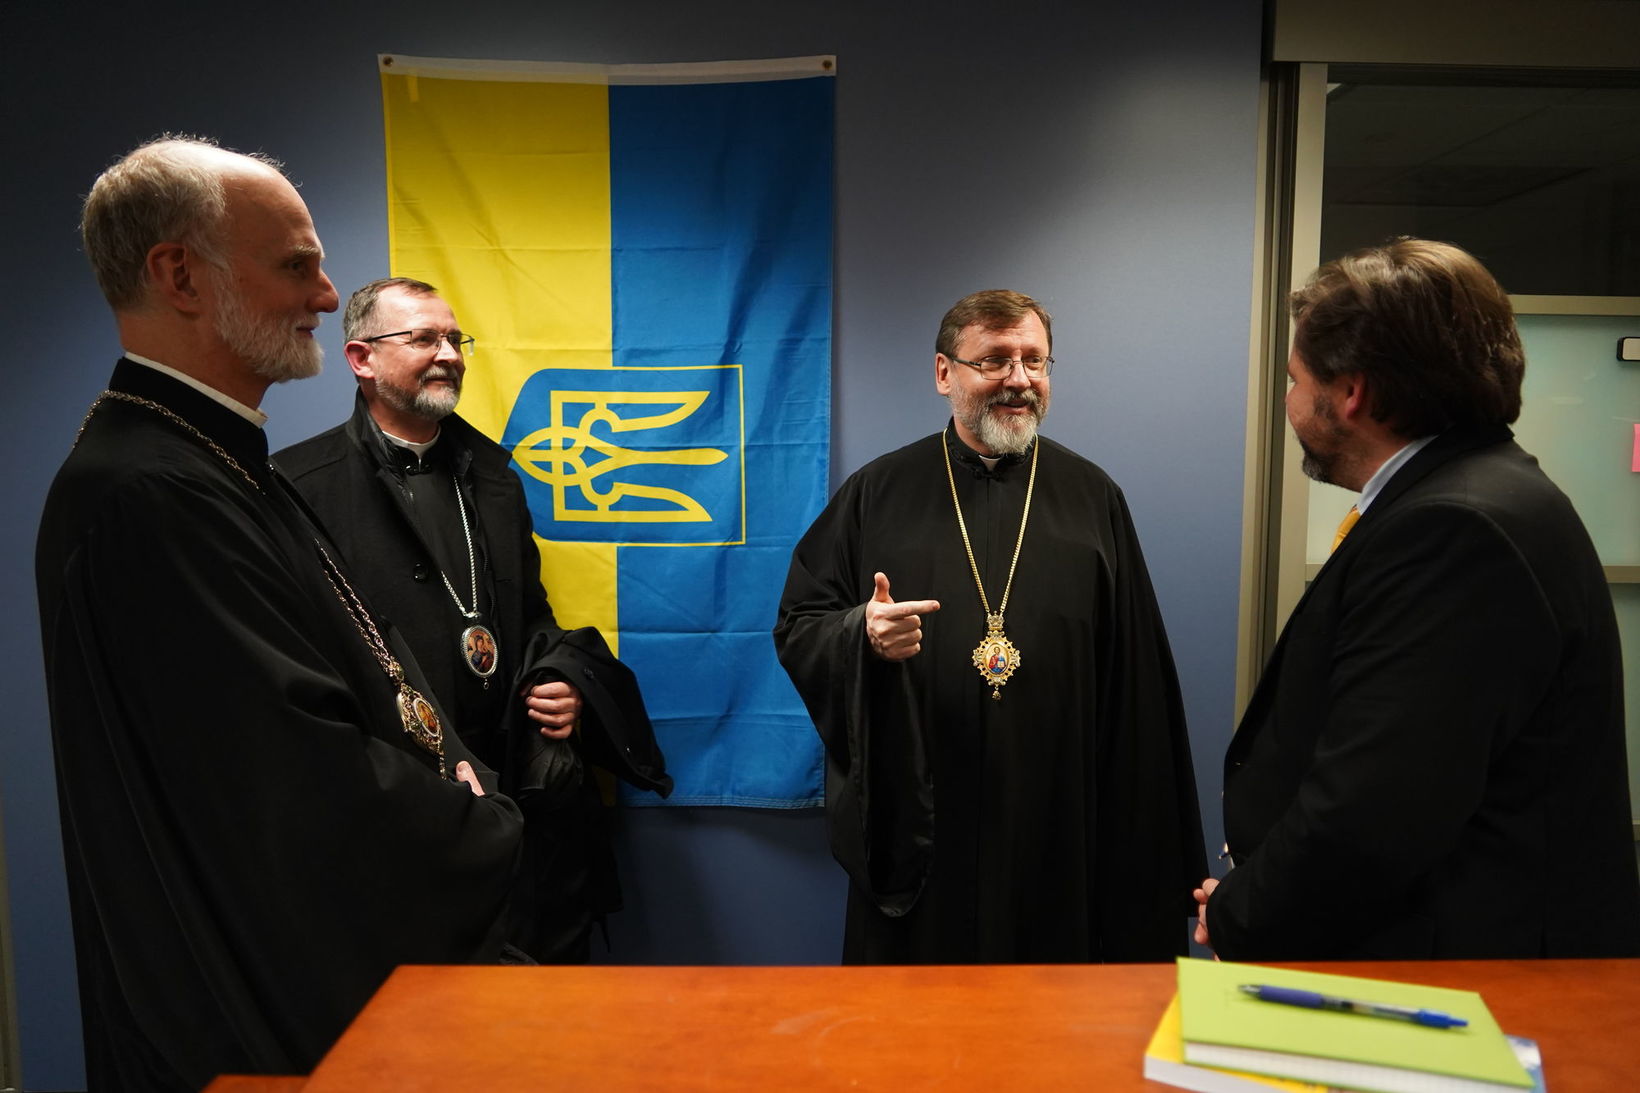 Члени Постійного Синоду у Держдепі США, де в офісах є багато українських прапорів